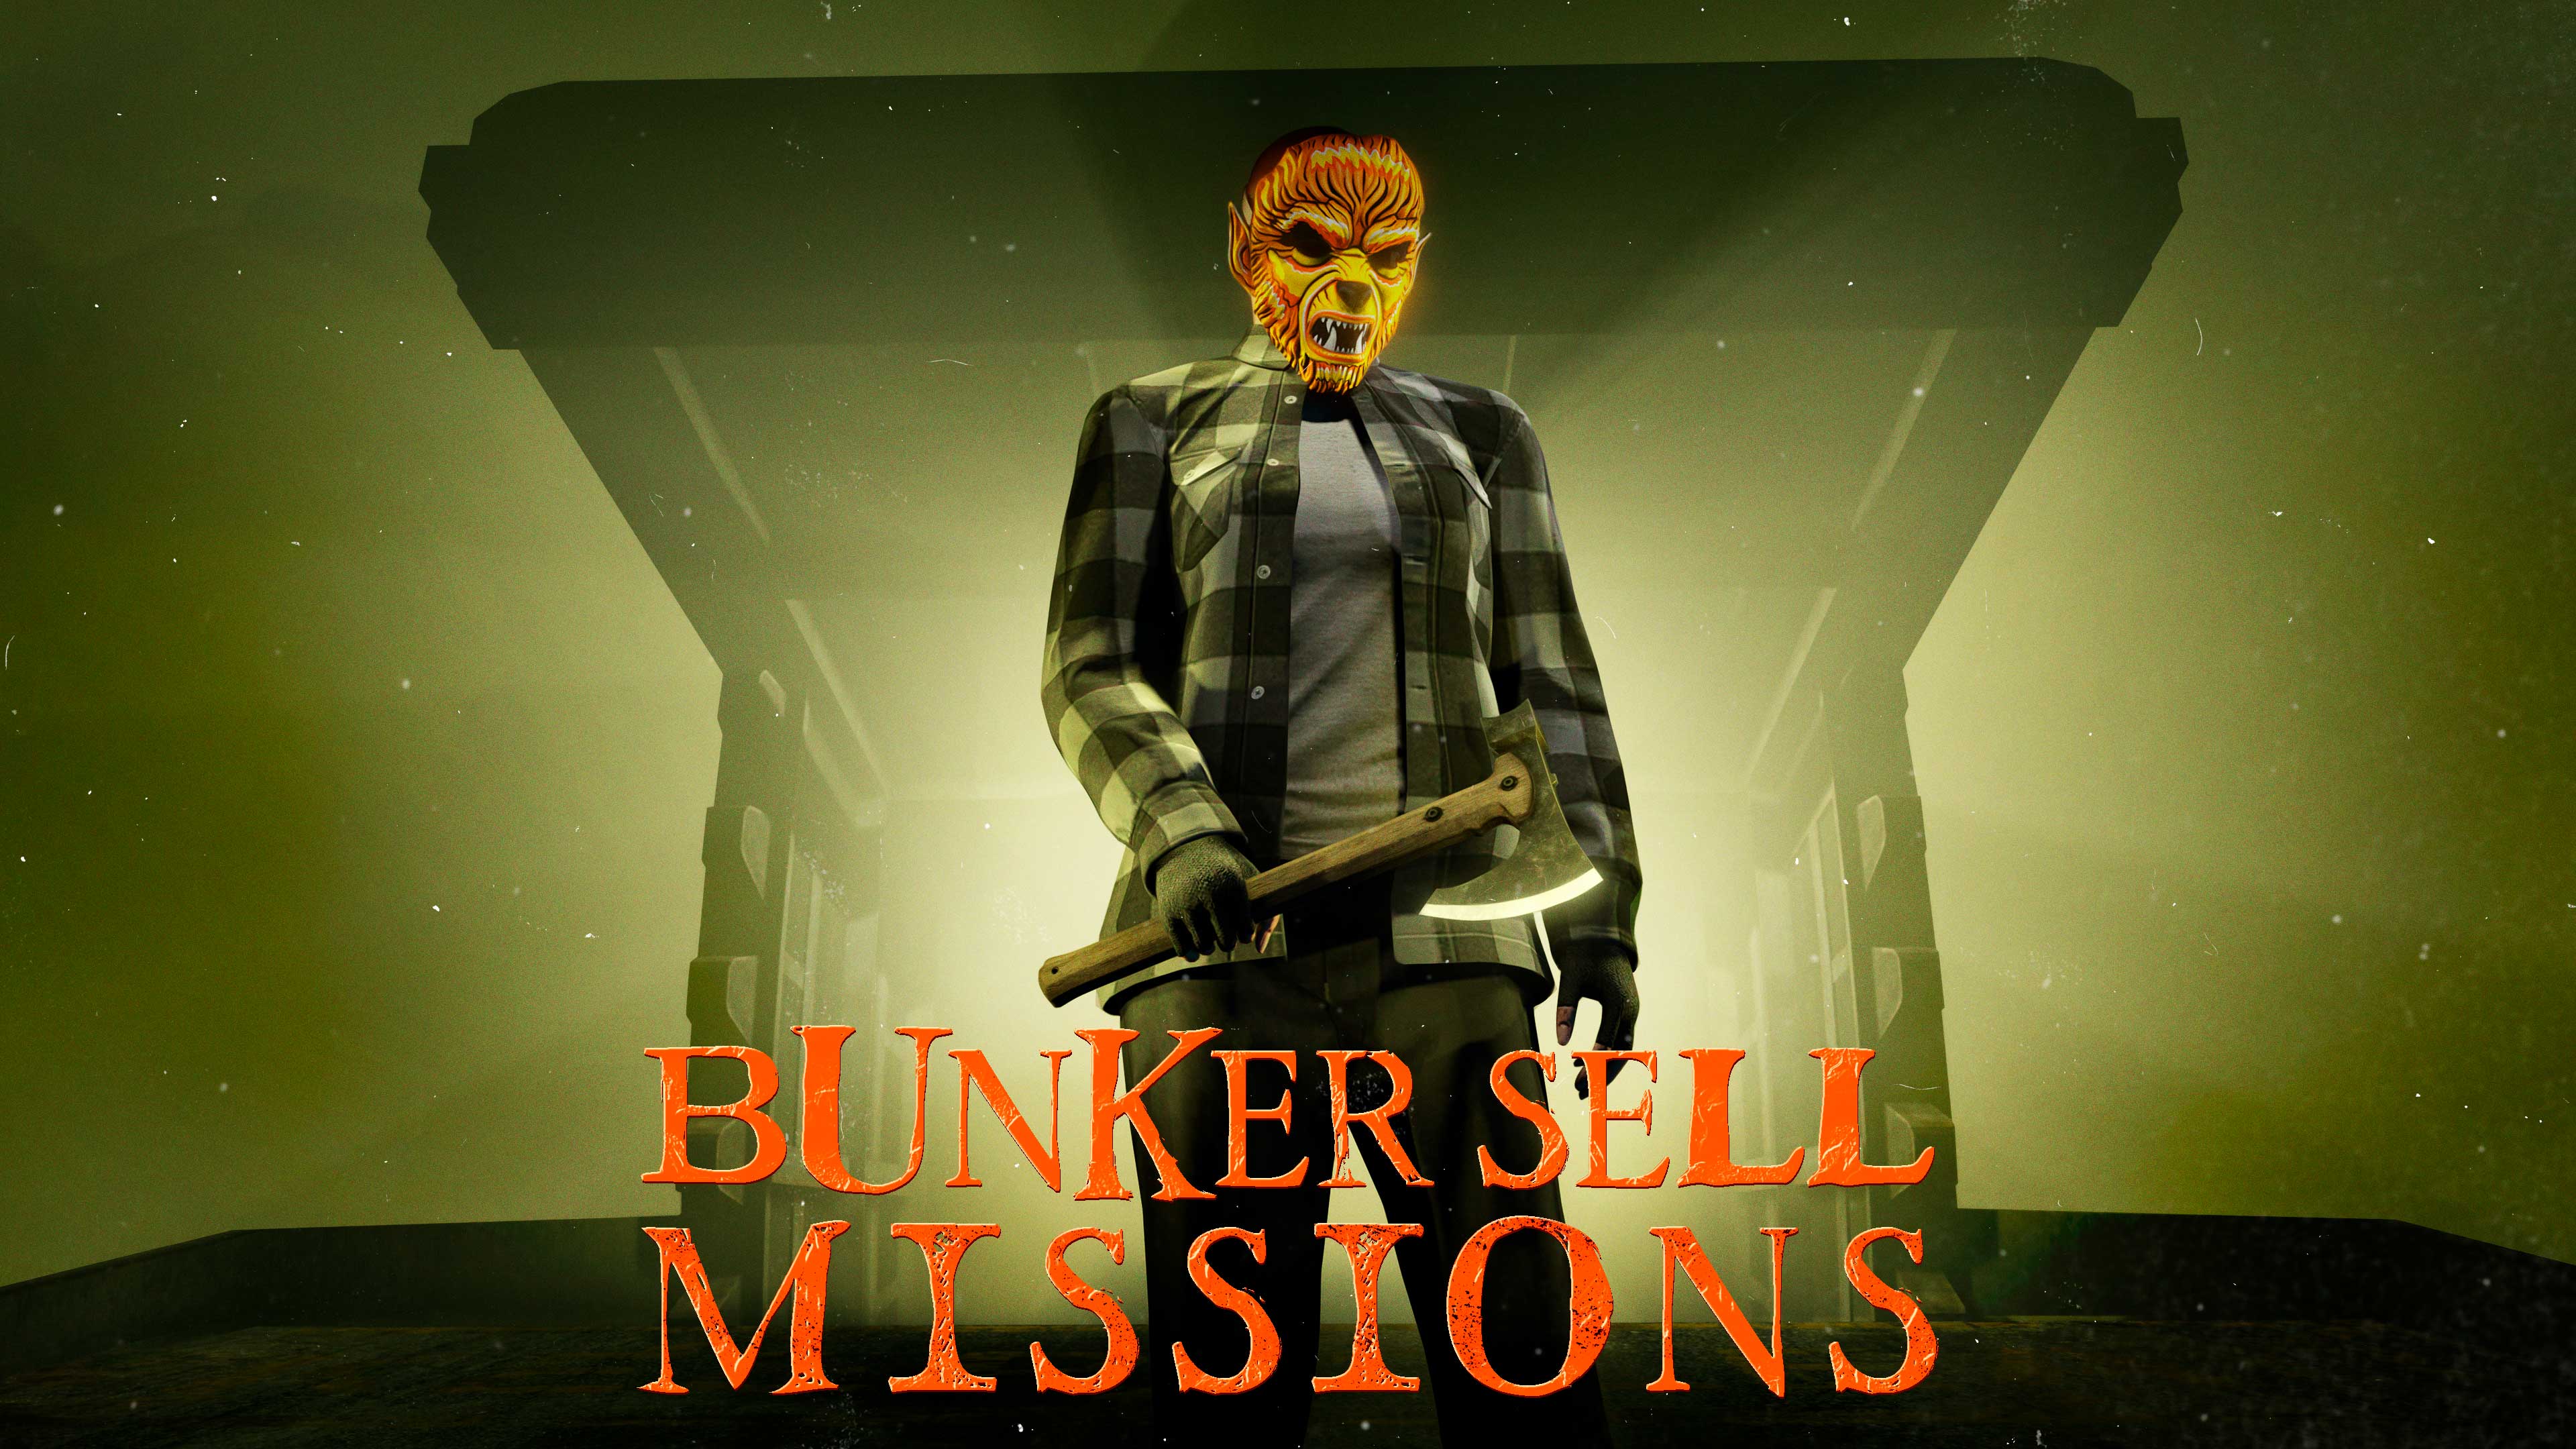 Pôster das missões de venda do Bunker com um personagem do GTA Online usando uma máscara